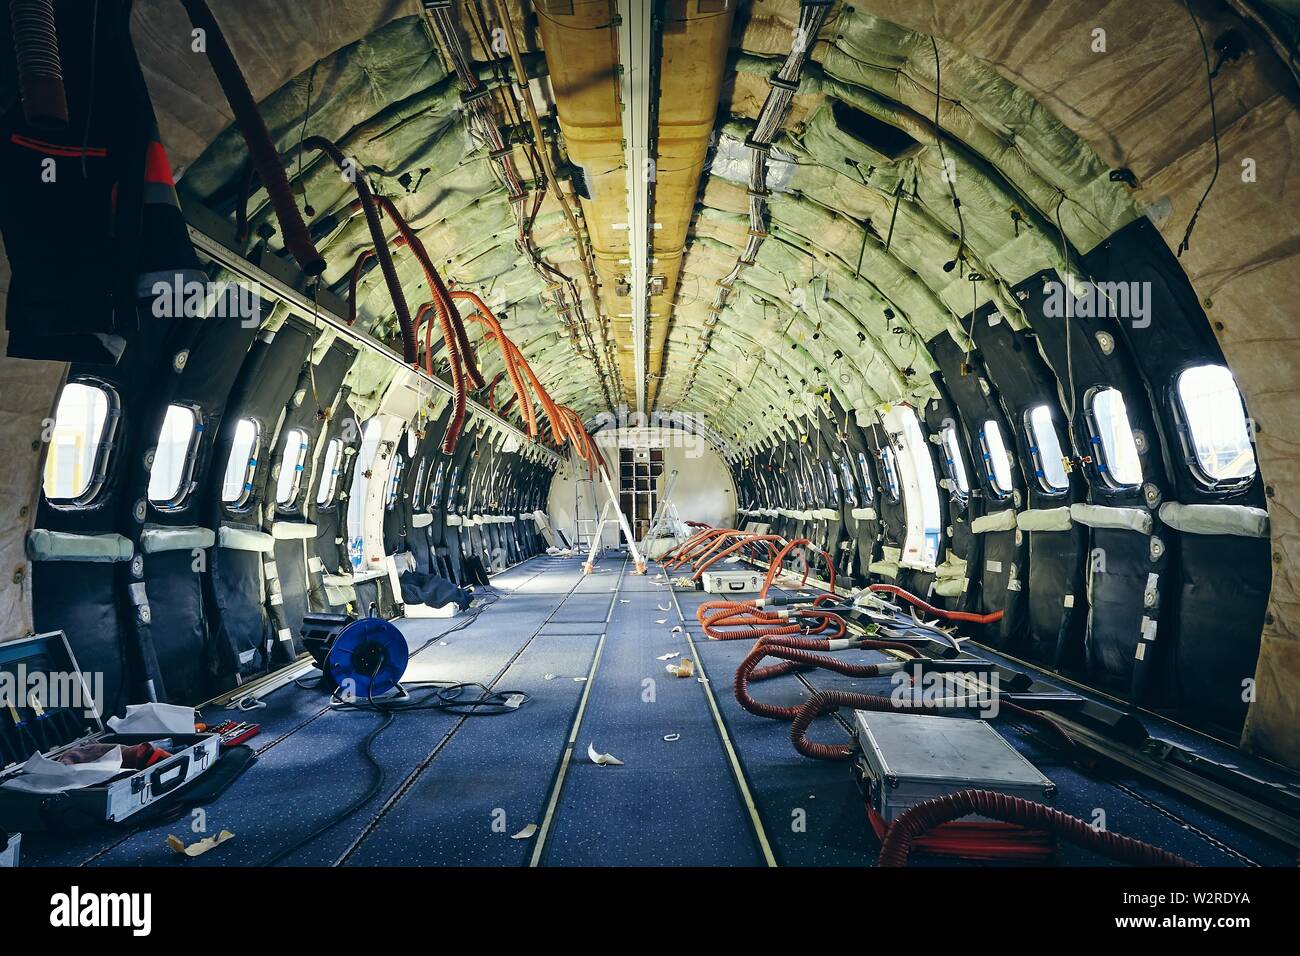 Innenraum der kommerziellen Flugzeug unter schwere Instandhaltung. Themen Sicherheit, Kontrolle und Luft- und Raumfahrtindustrie. Stockfoto